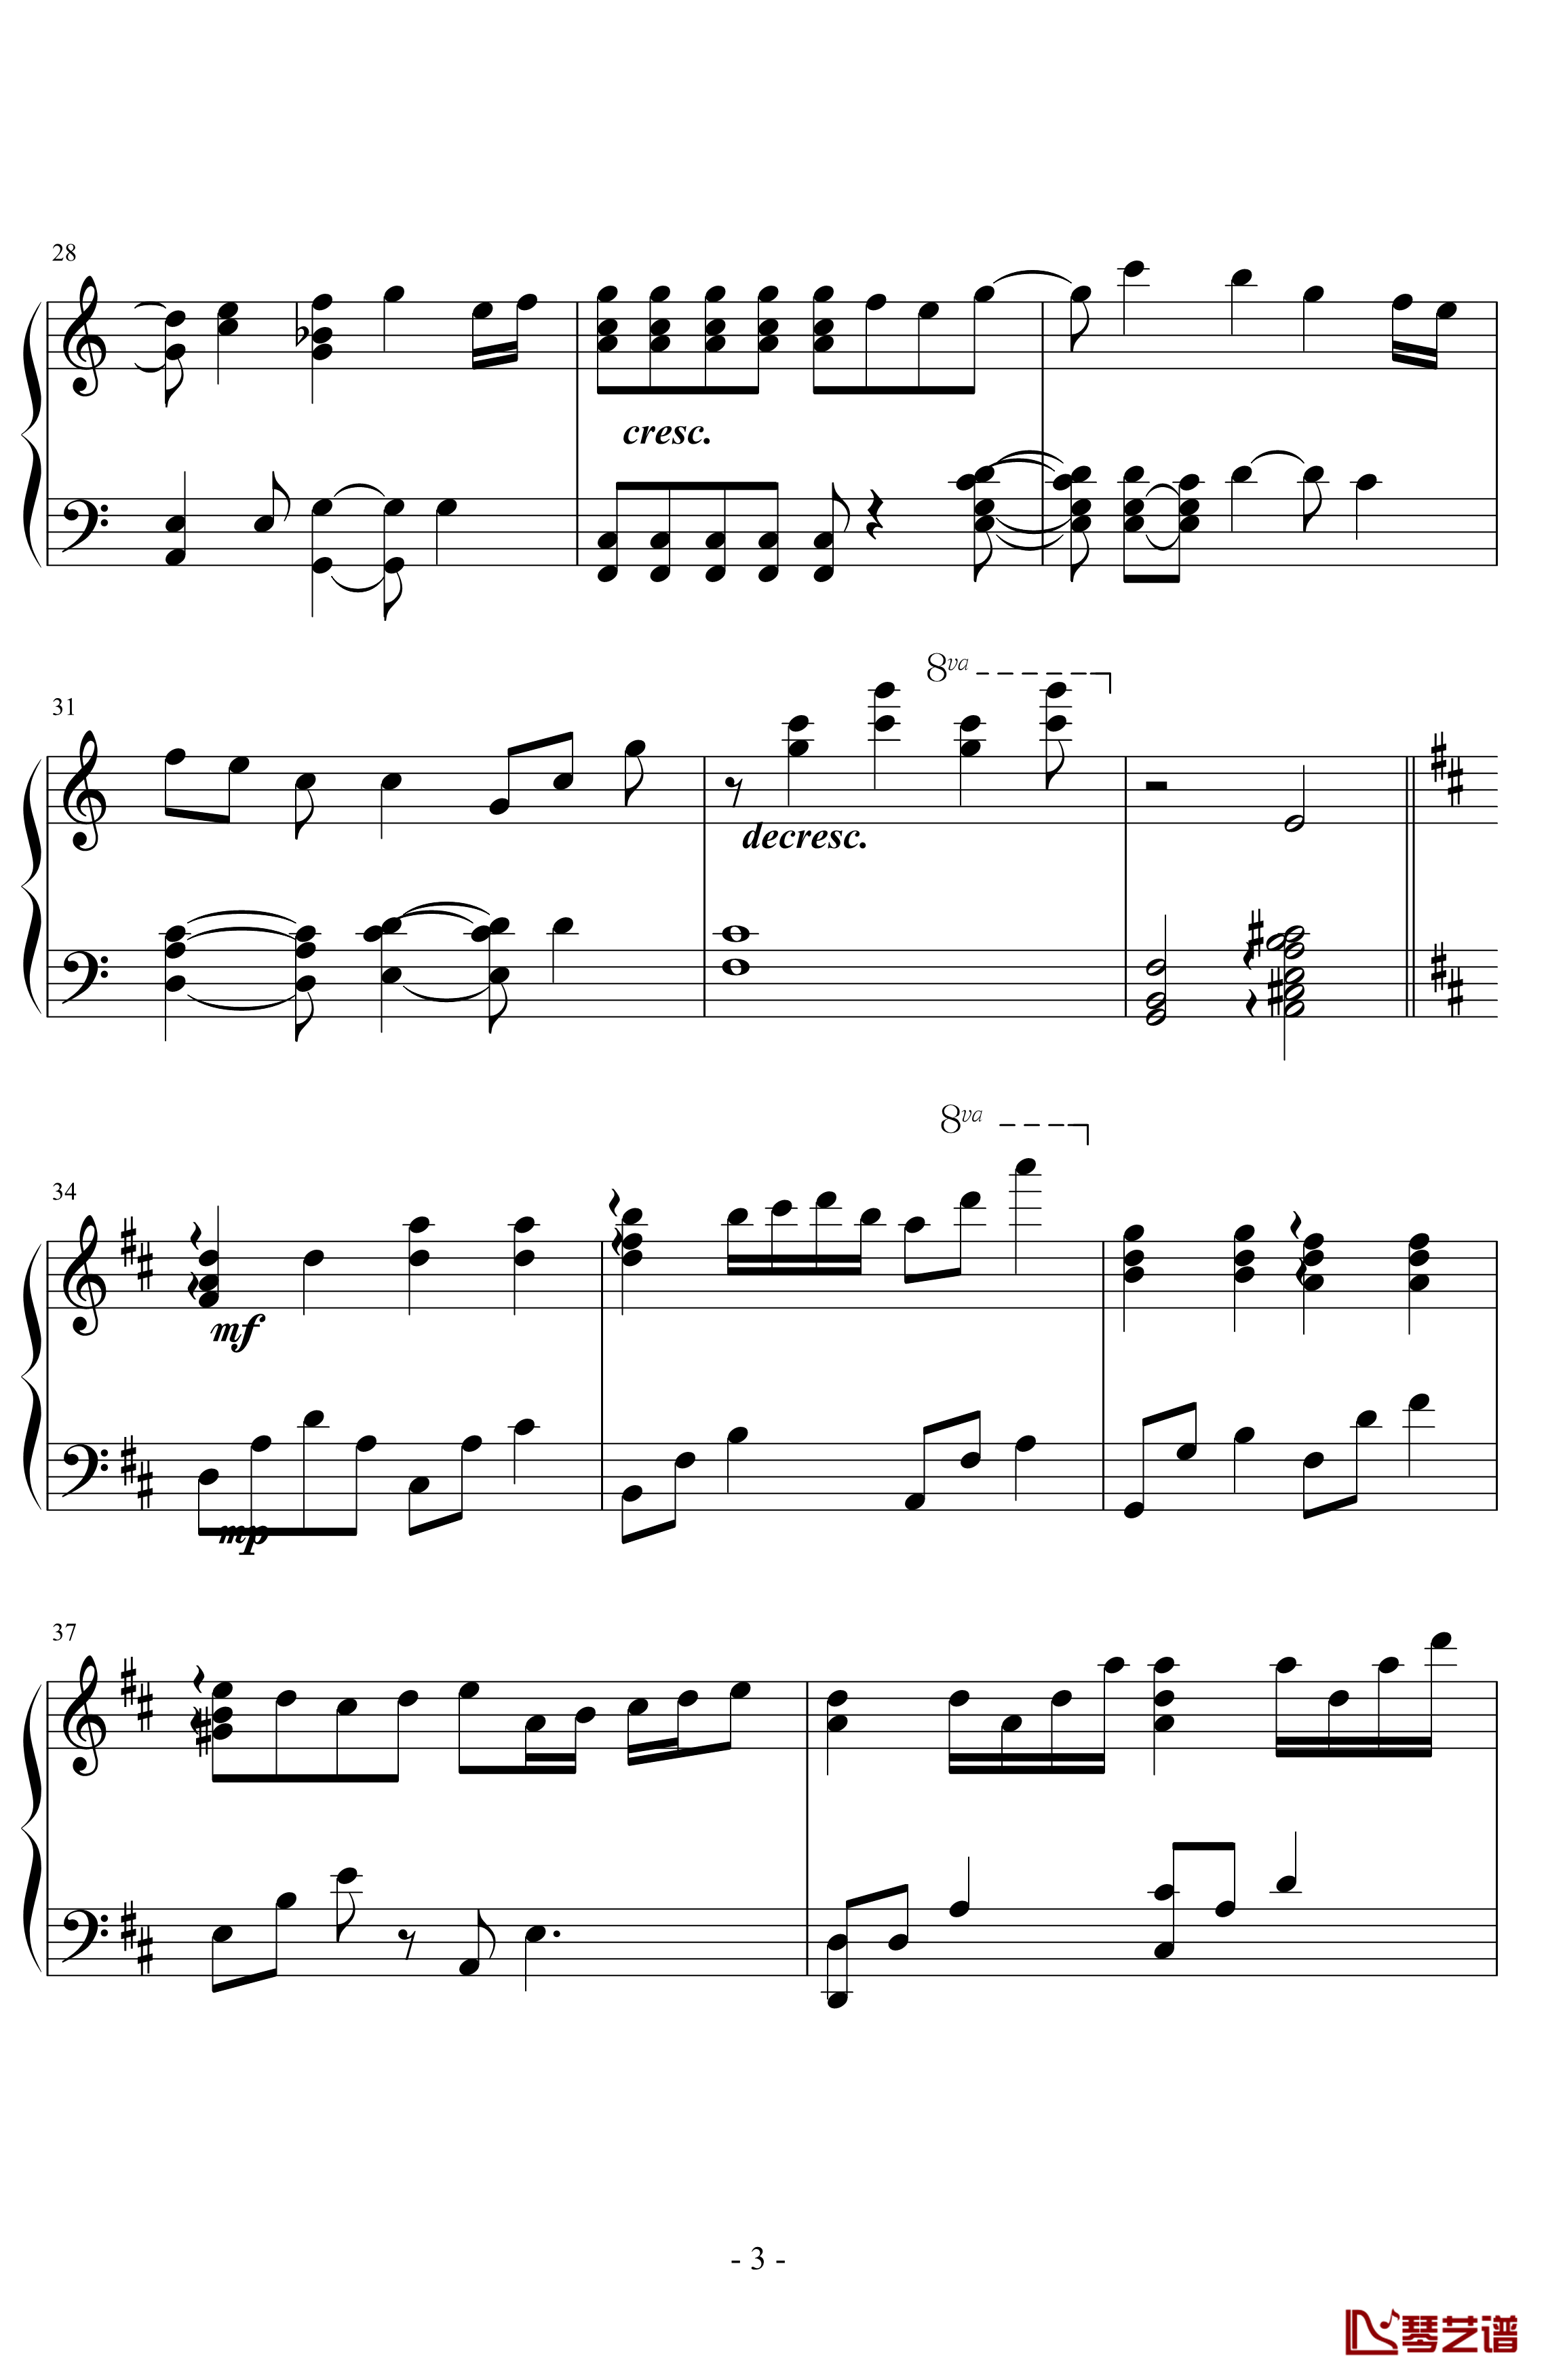 小星星幻想曲钢琴谱-V.K克3